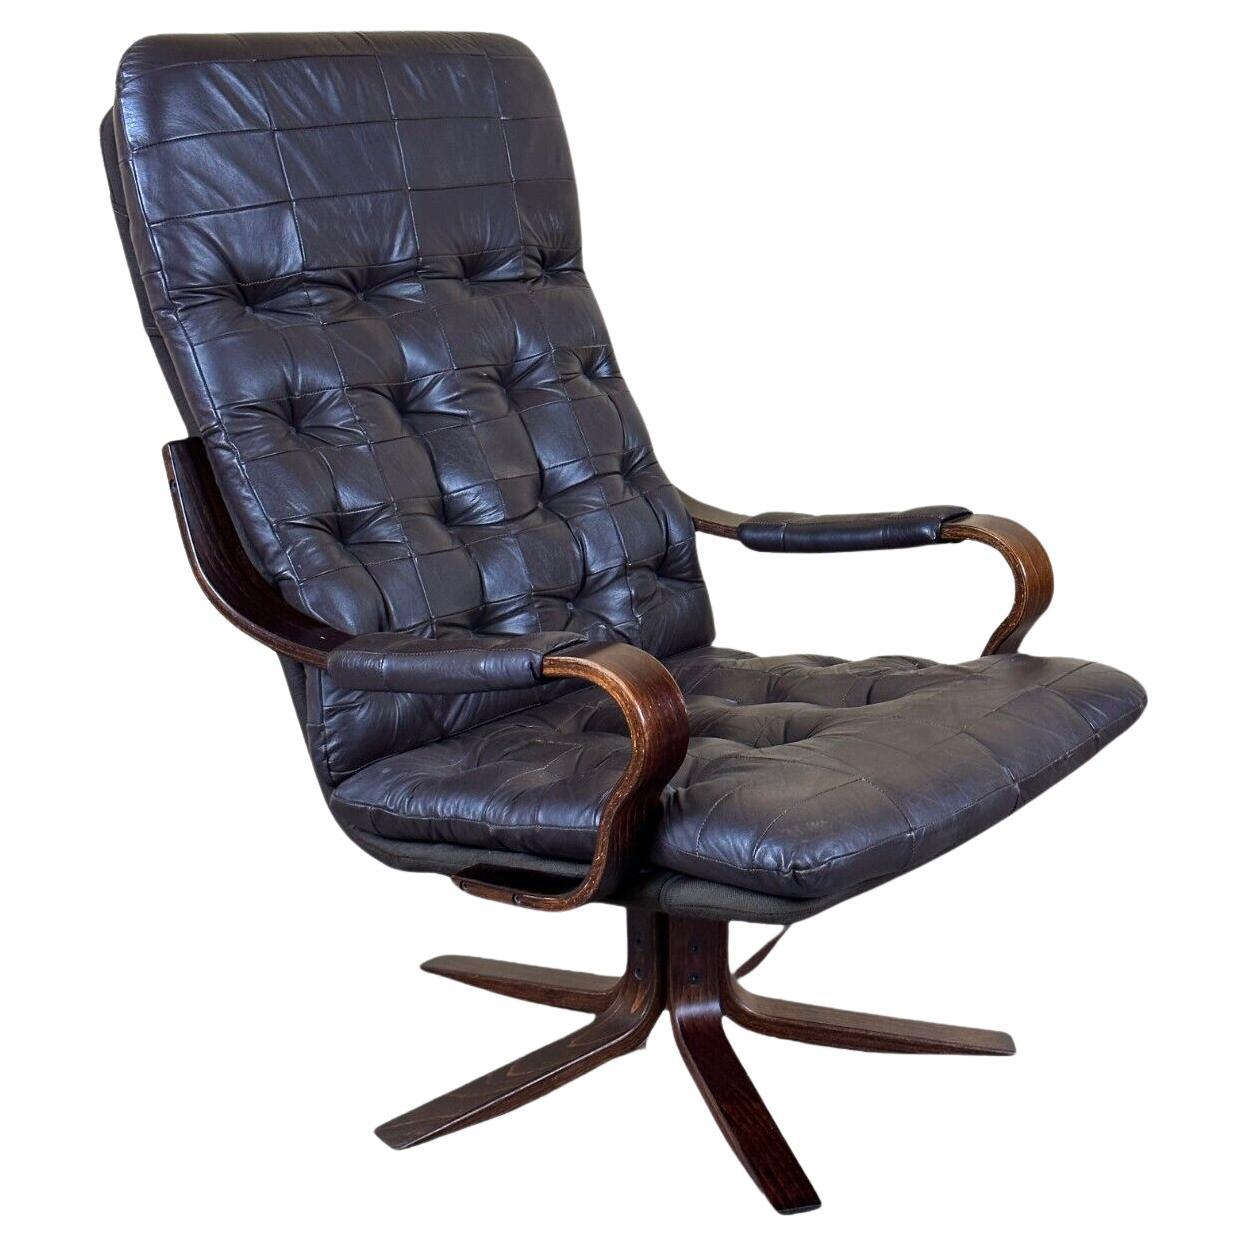 60s 70s armchair Easy Chair leather armchair swivel armchair Danish Modern Desig